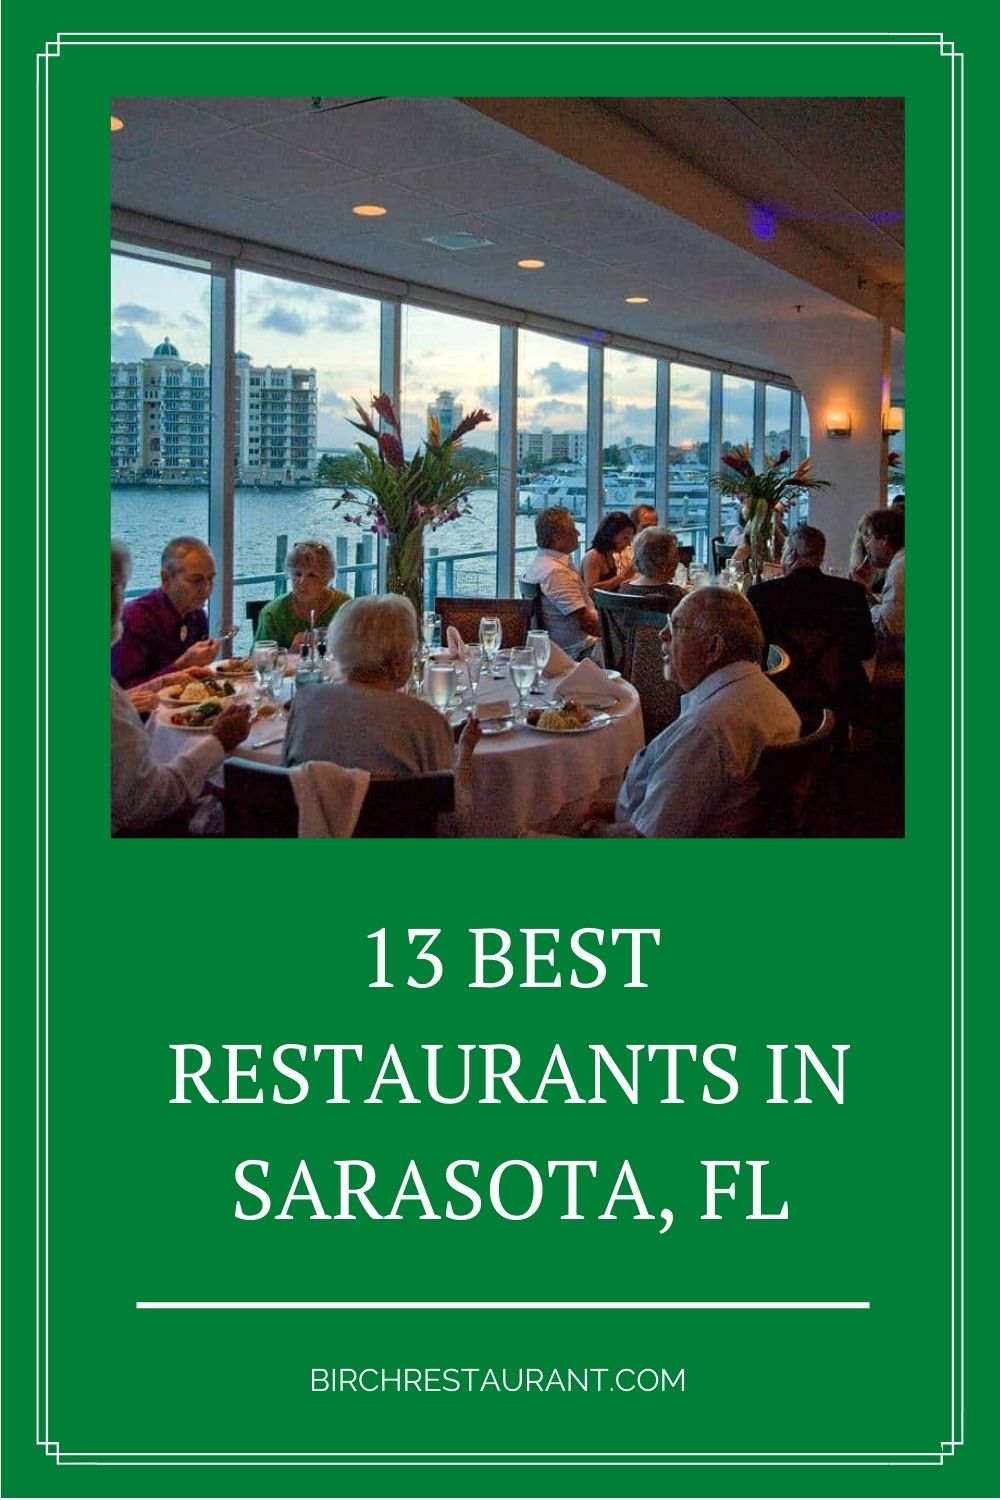 Best Restaurants in Sarasota